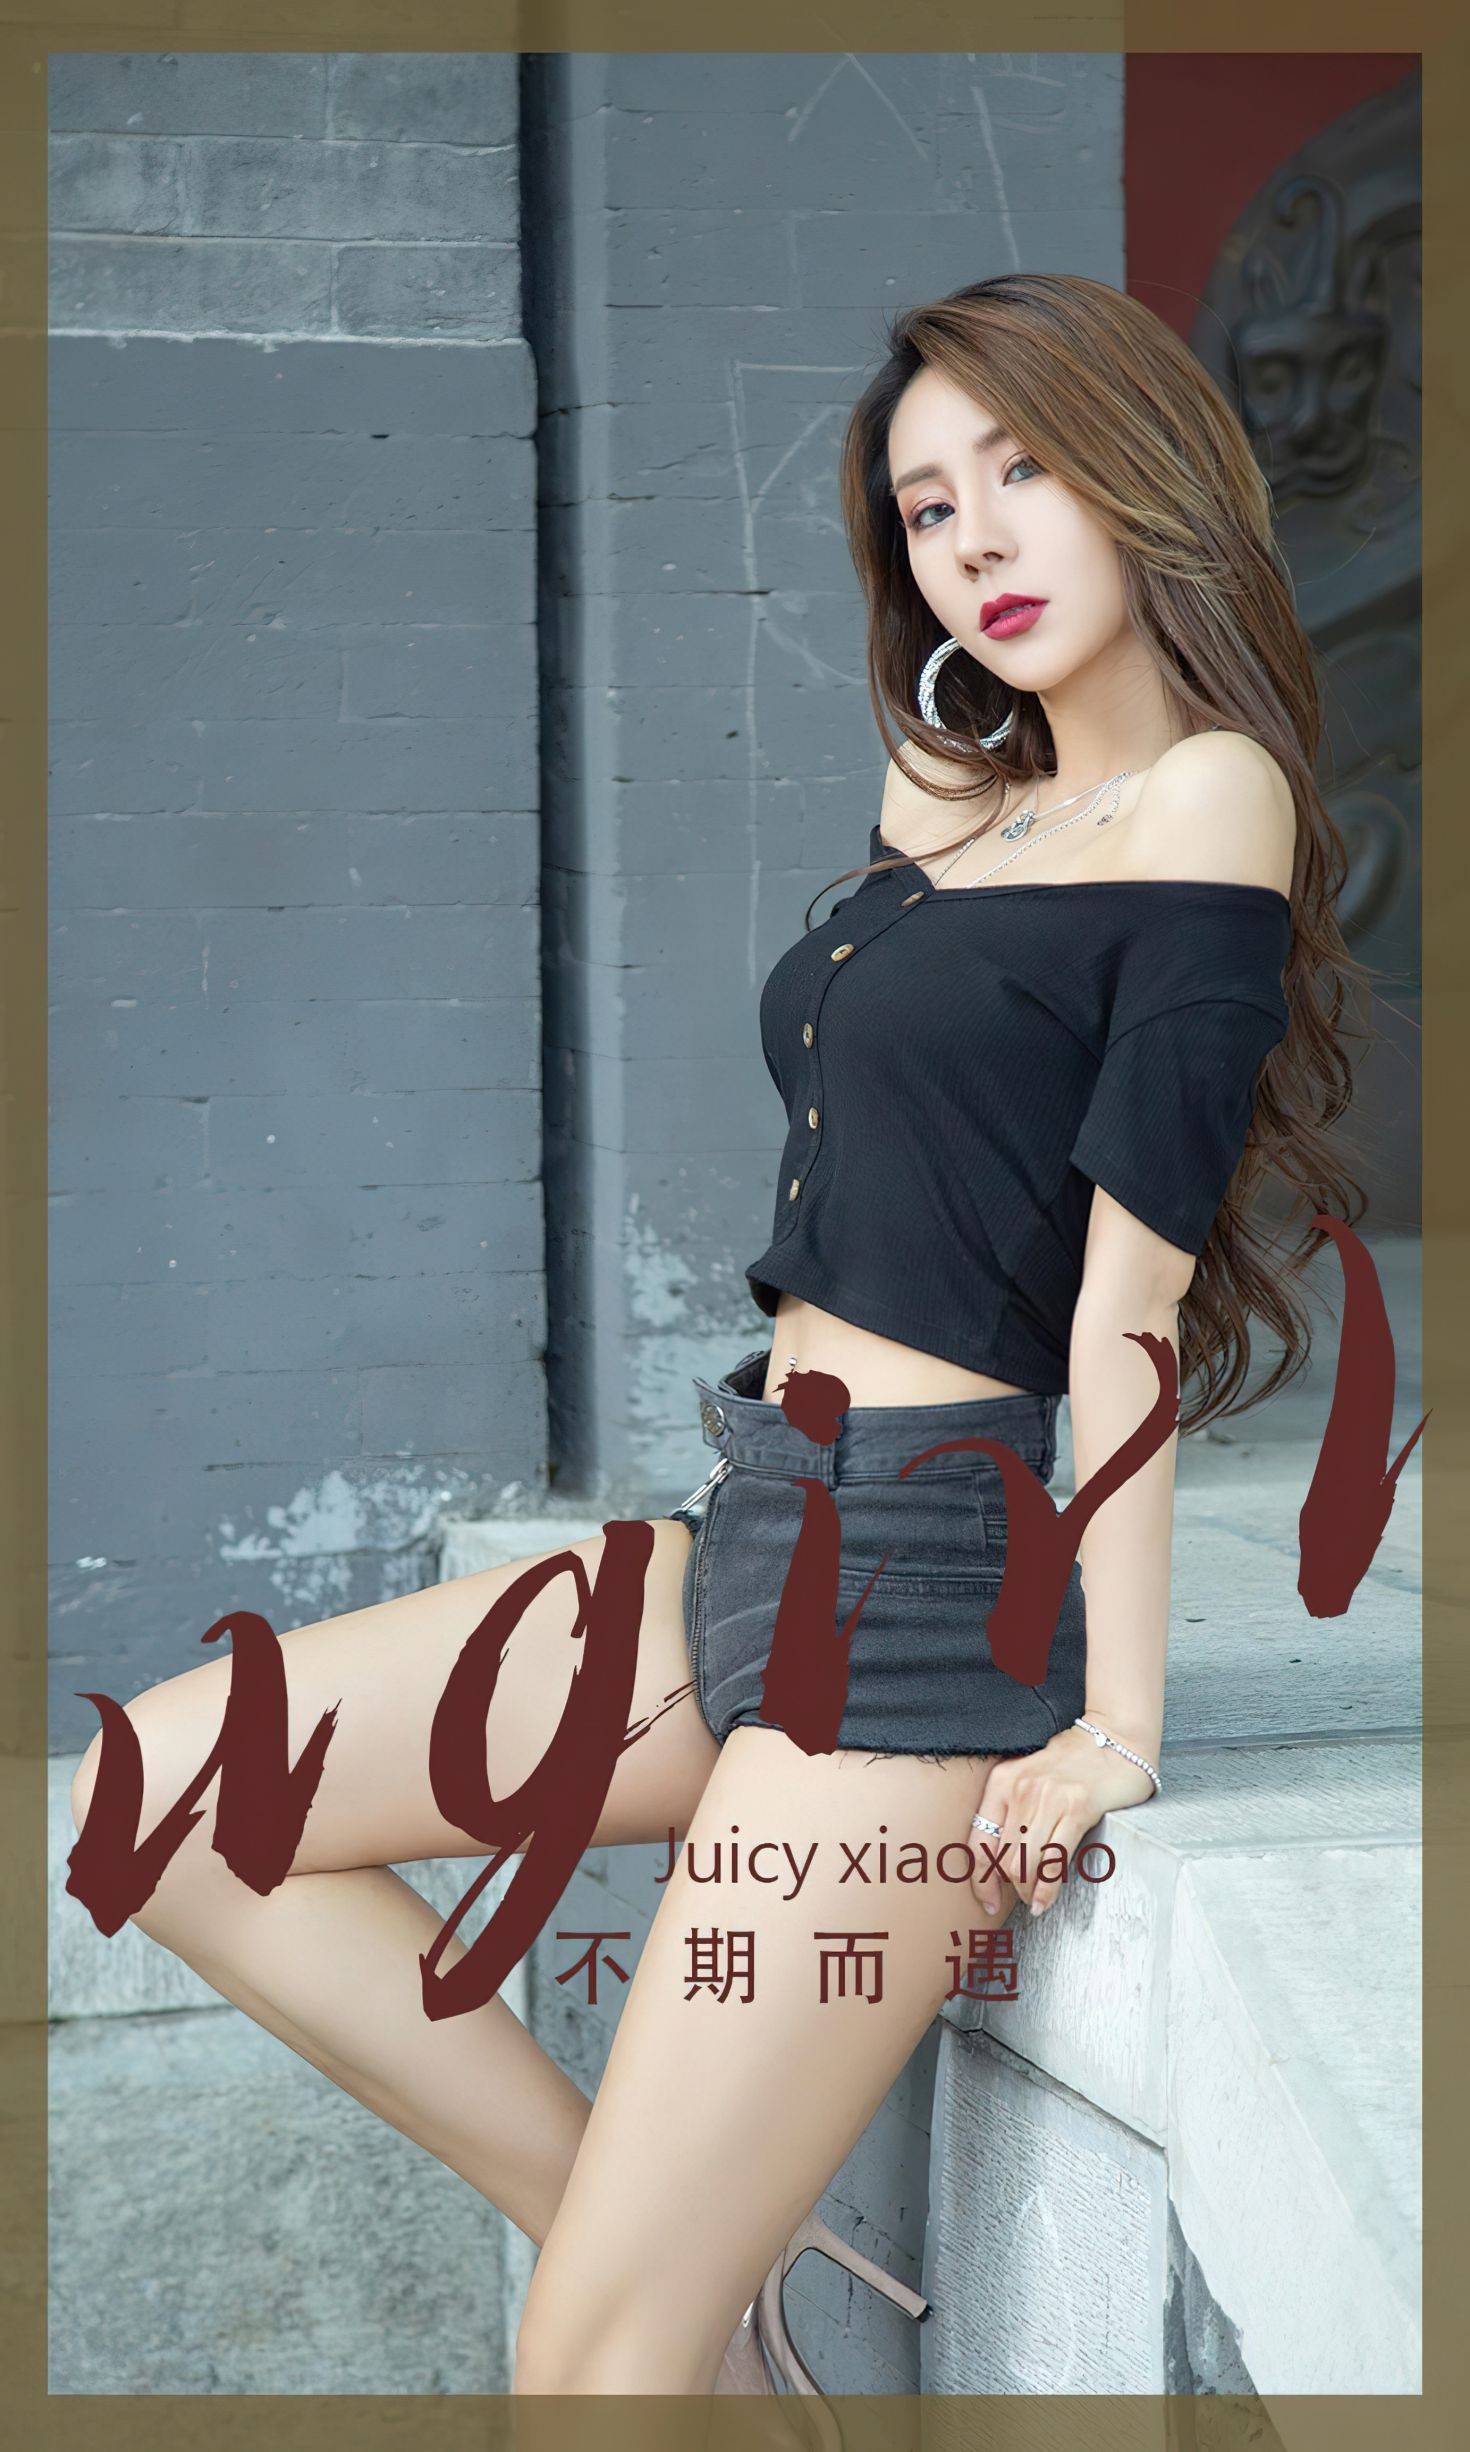 Ugirls爱尤物尤果圈美女模特写真第No.2393期不期而遇 Juicy xiaoxiao (2)